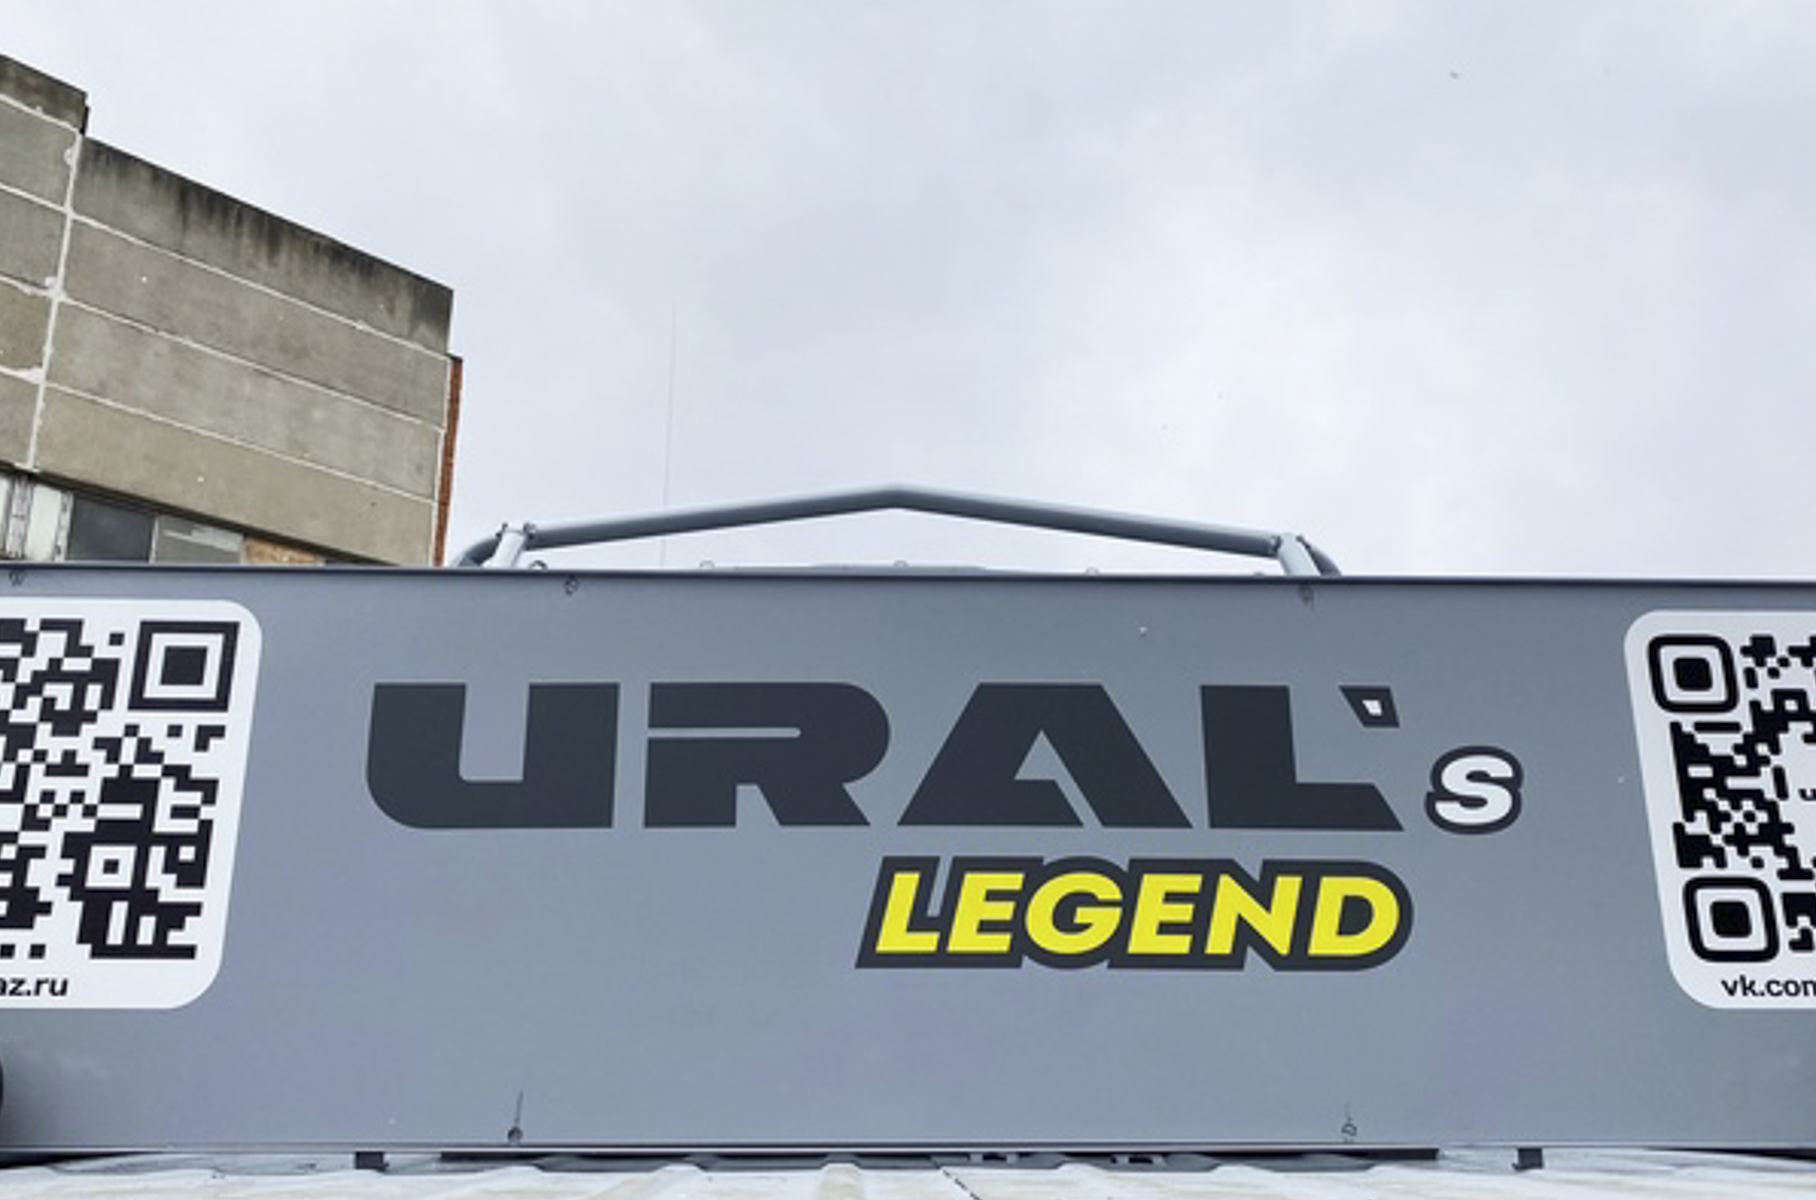 URAL's legend